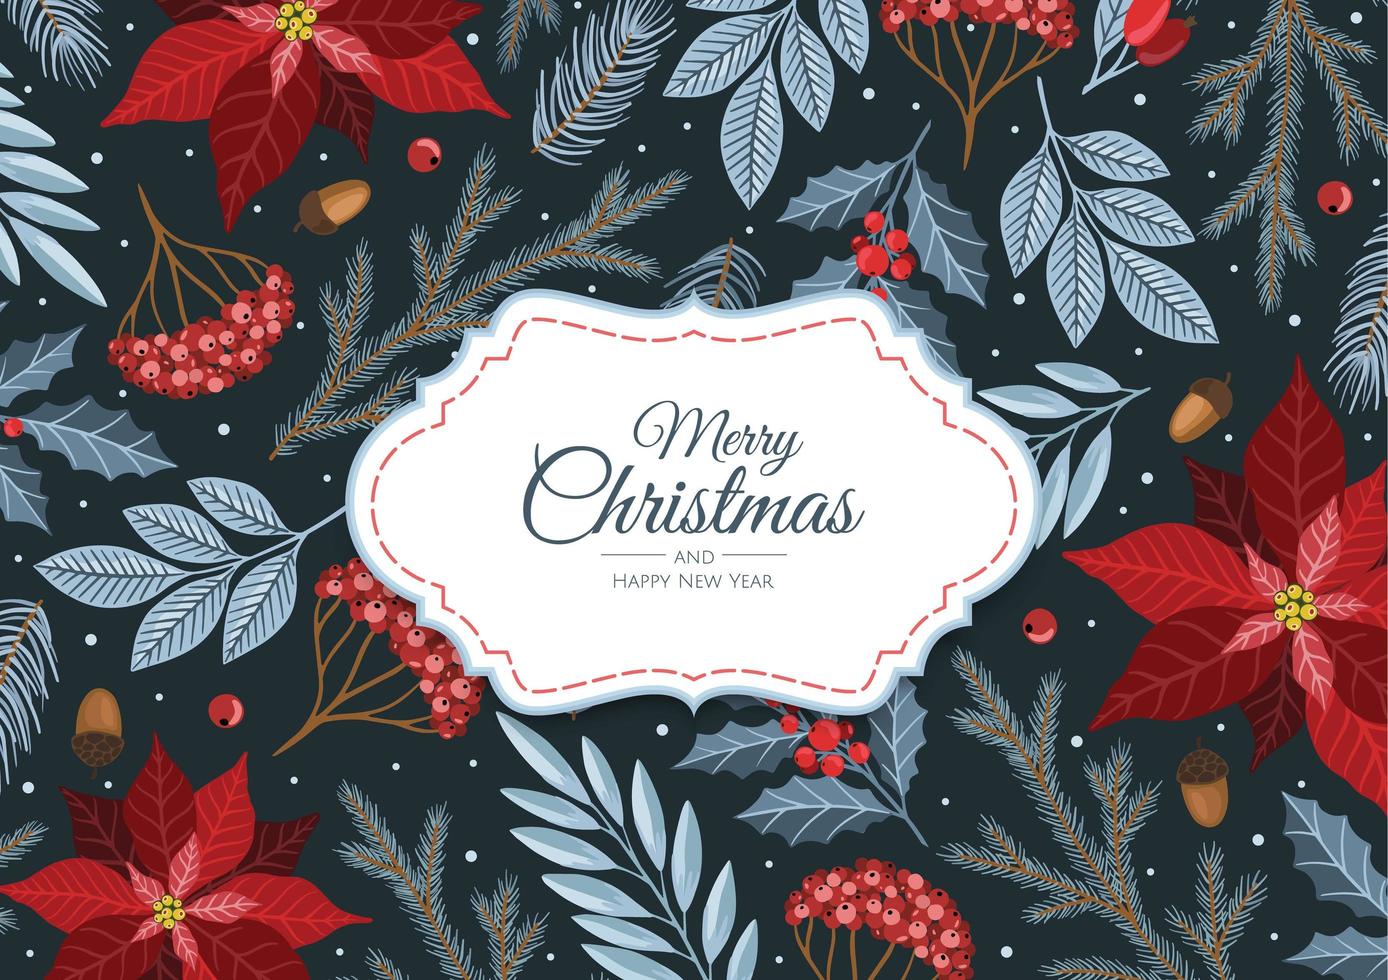 tarjetas de feliz navidad y año nuevo con plantas de invierno, ilustración de diseño para saludos, invitaciones, volantes, folletos. vector